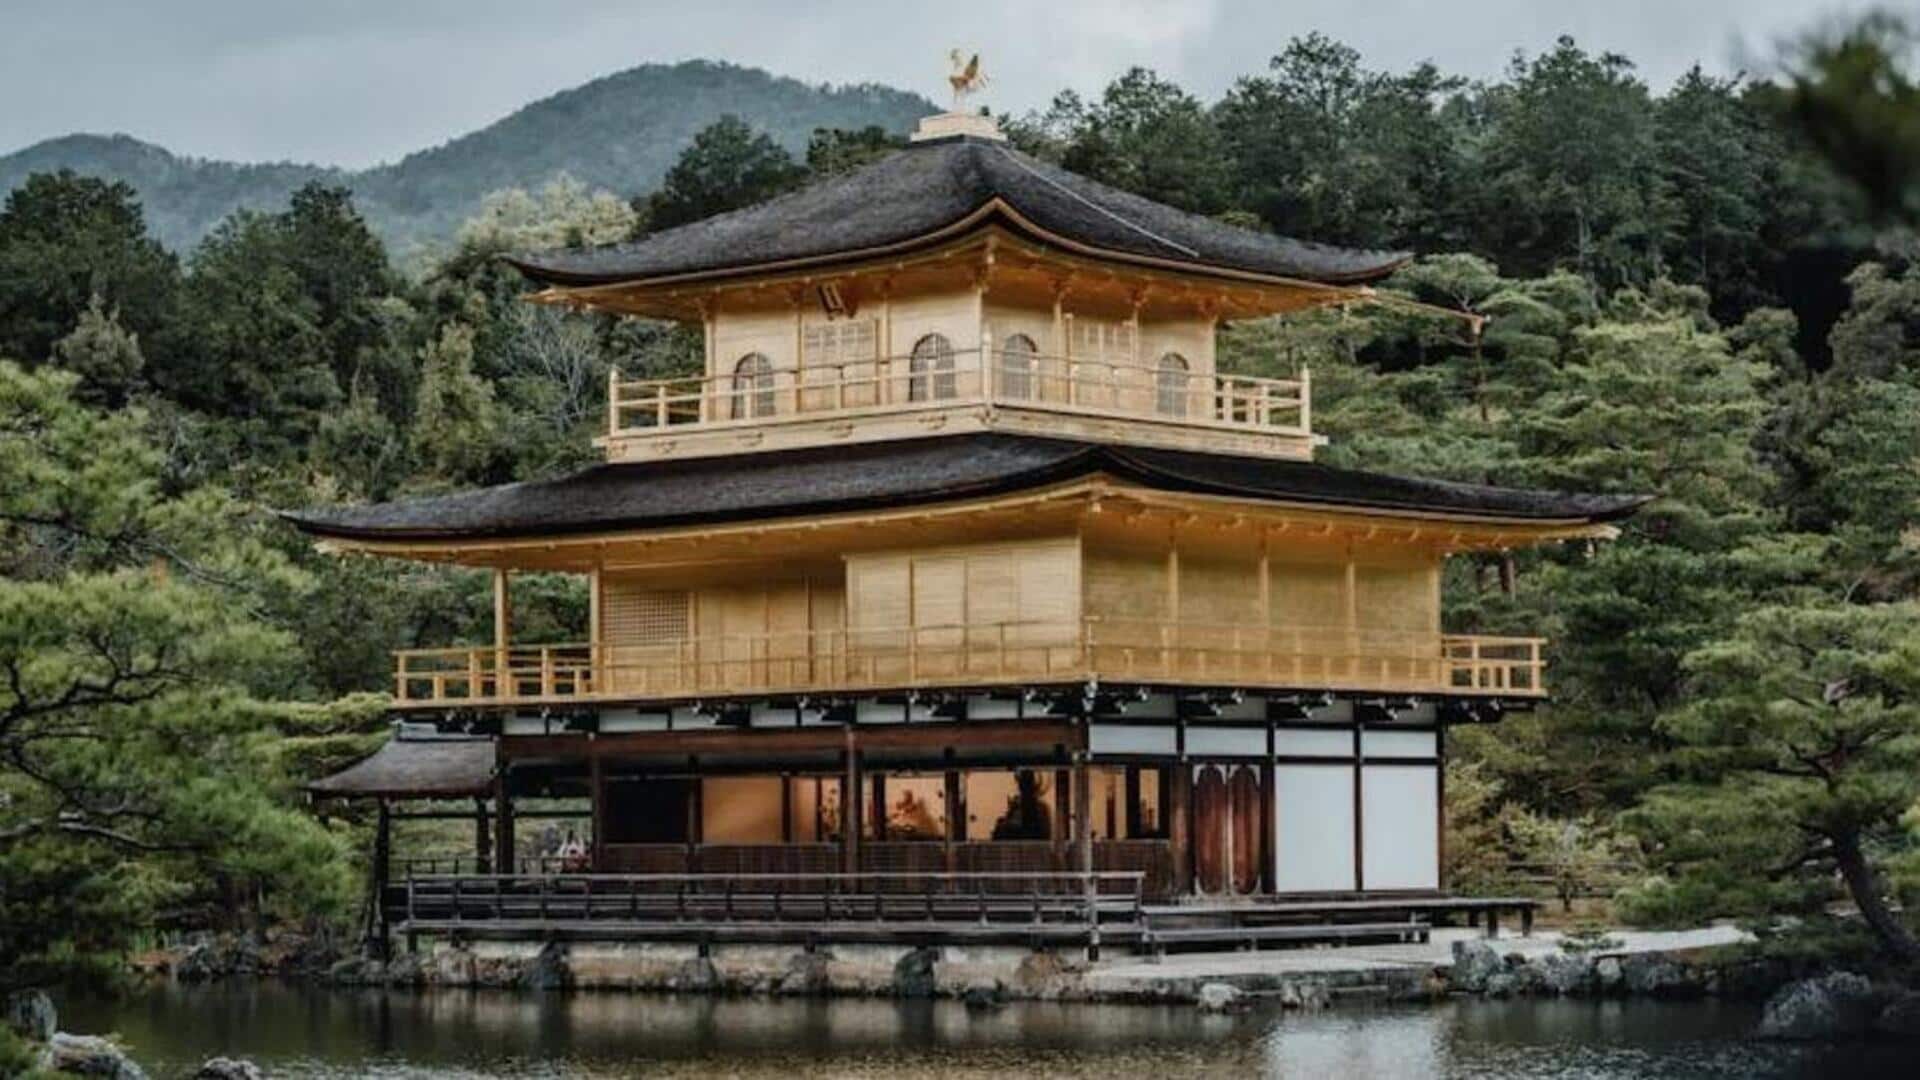 Rasakan ketenangan abadi Kyoto dengan panduan perjalanan ini